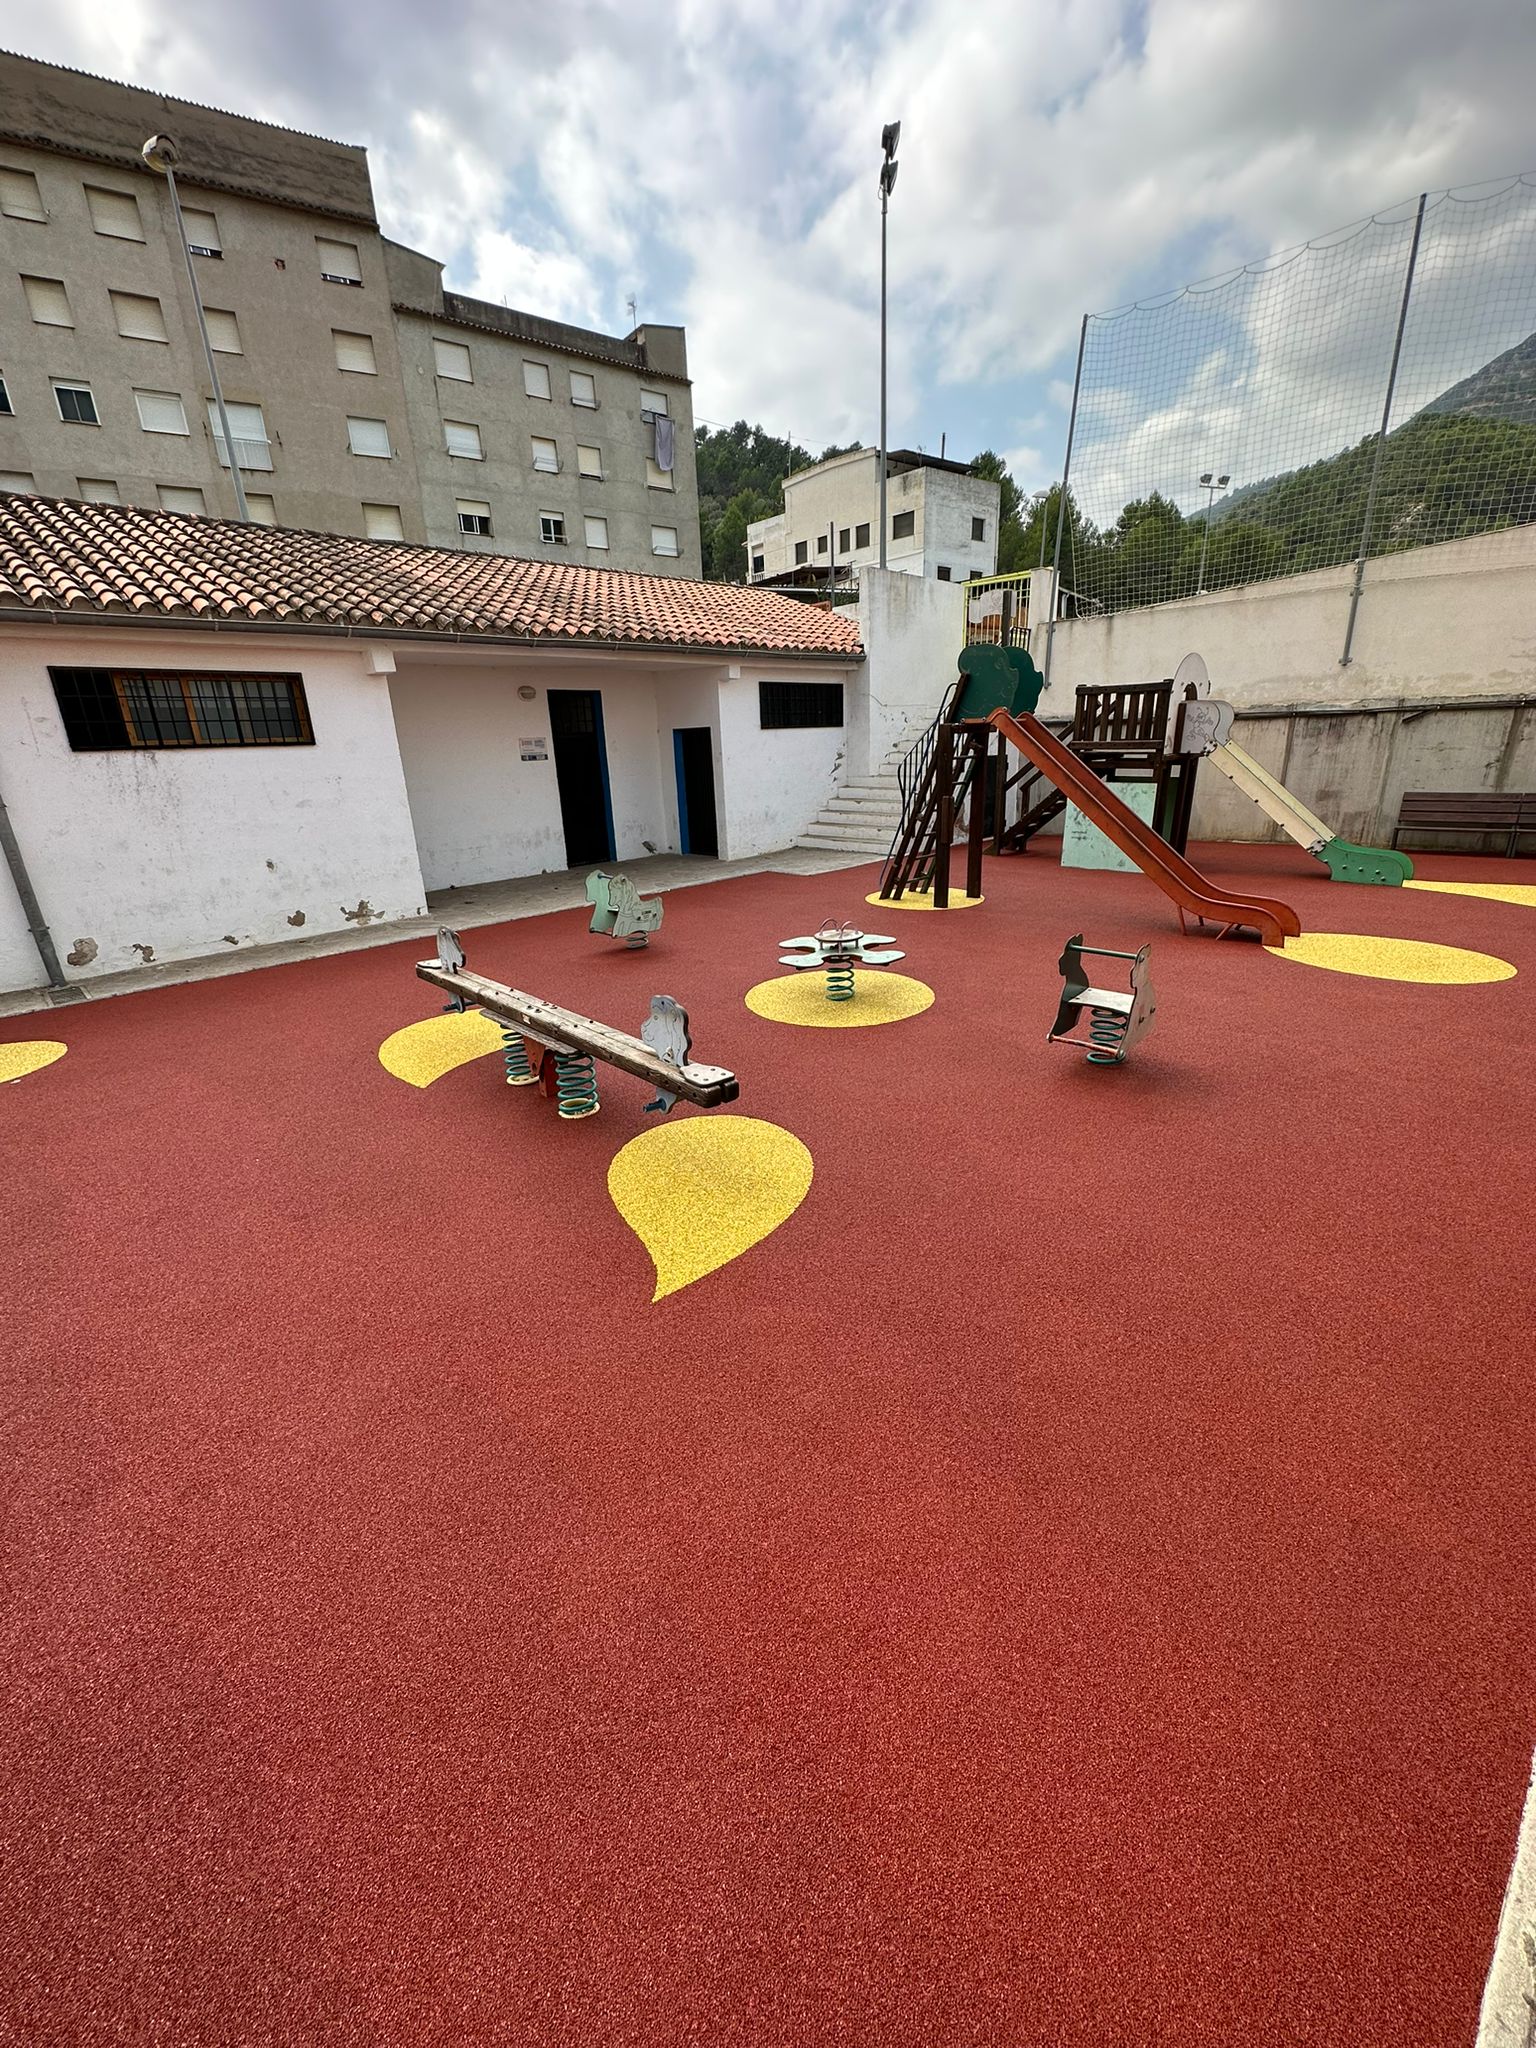 El parque infantil estrena un nuevo pavimento más seguro para las niñas y niños